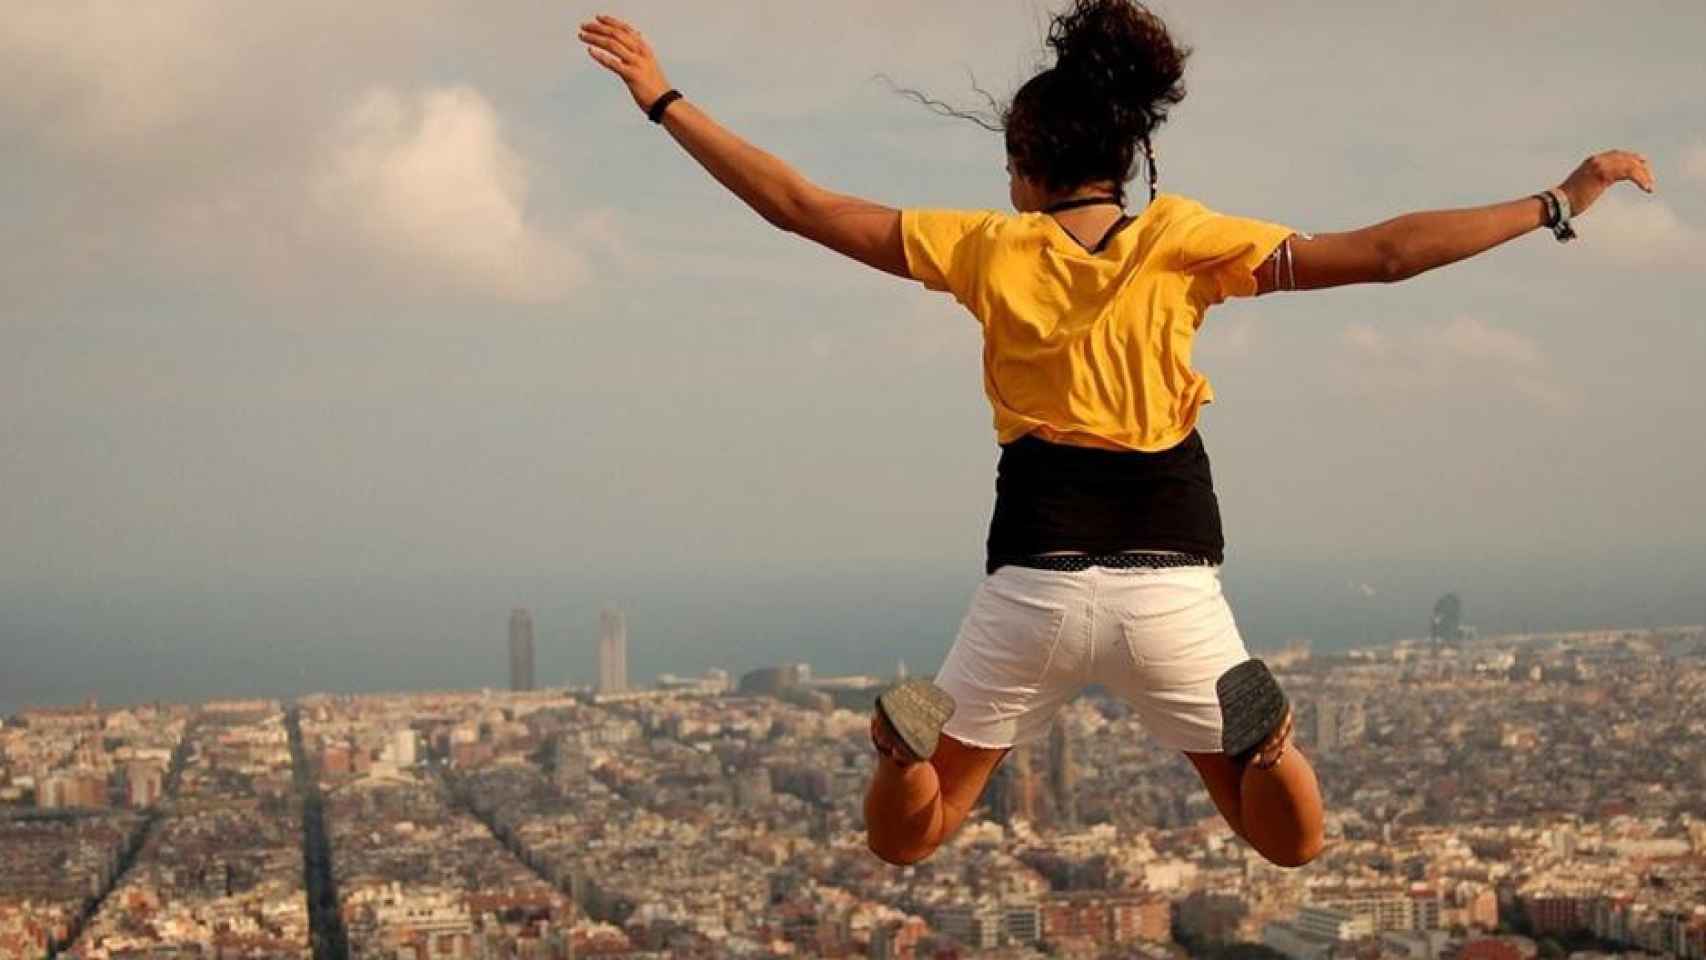 Turista saltando en Barcelona / THIERRY LLANSADES - VISUALHUNT